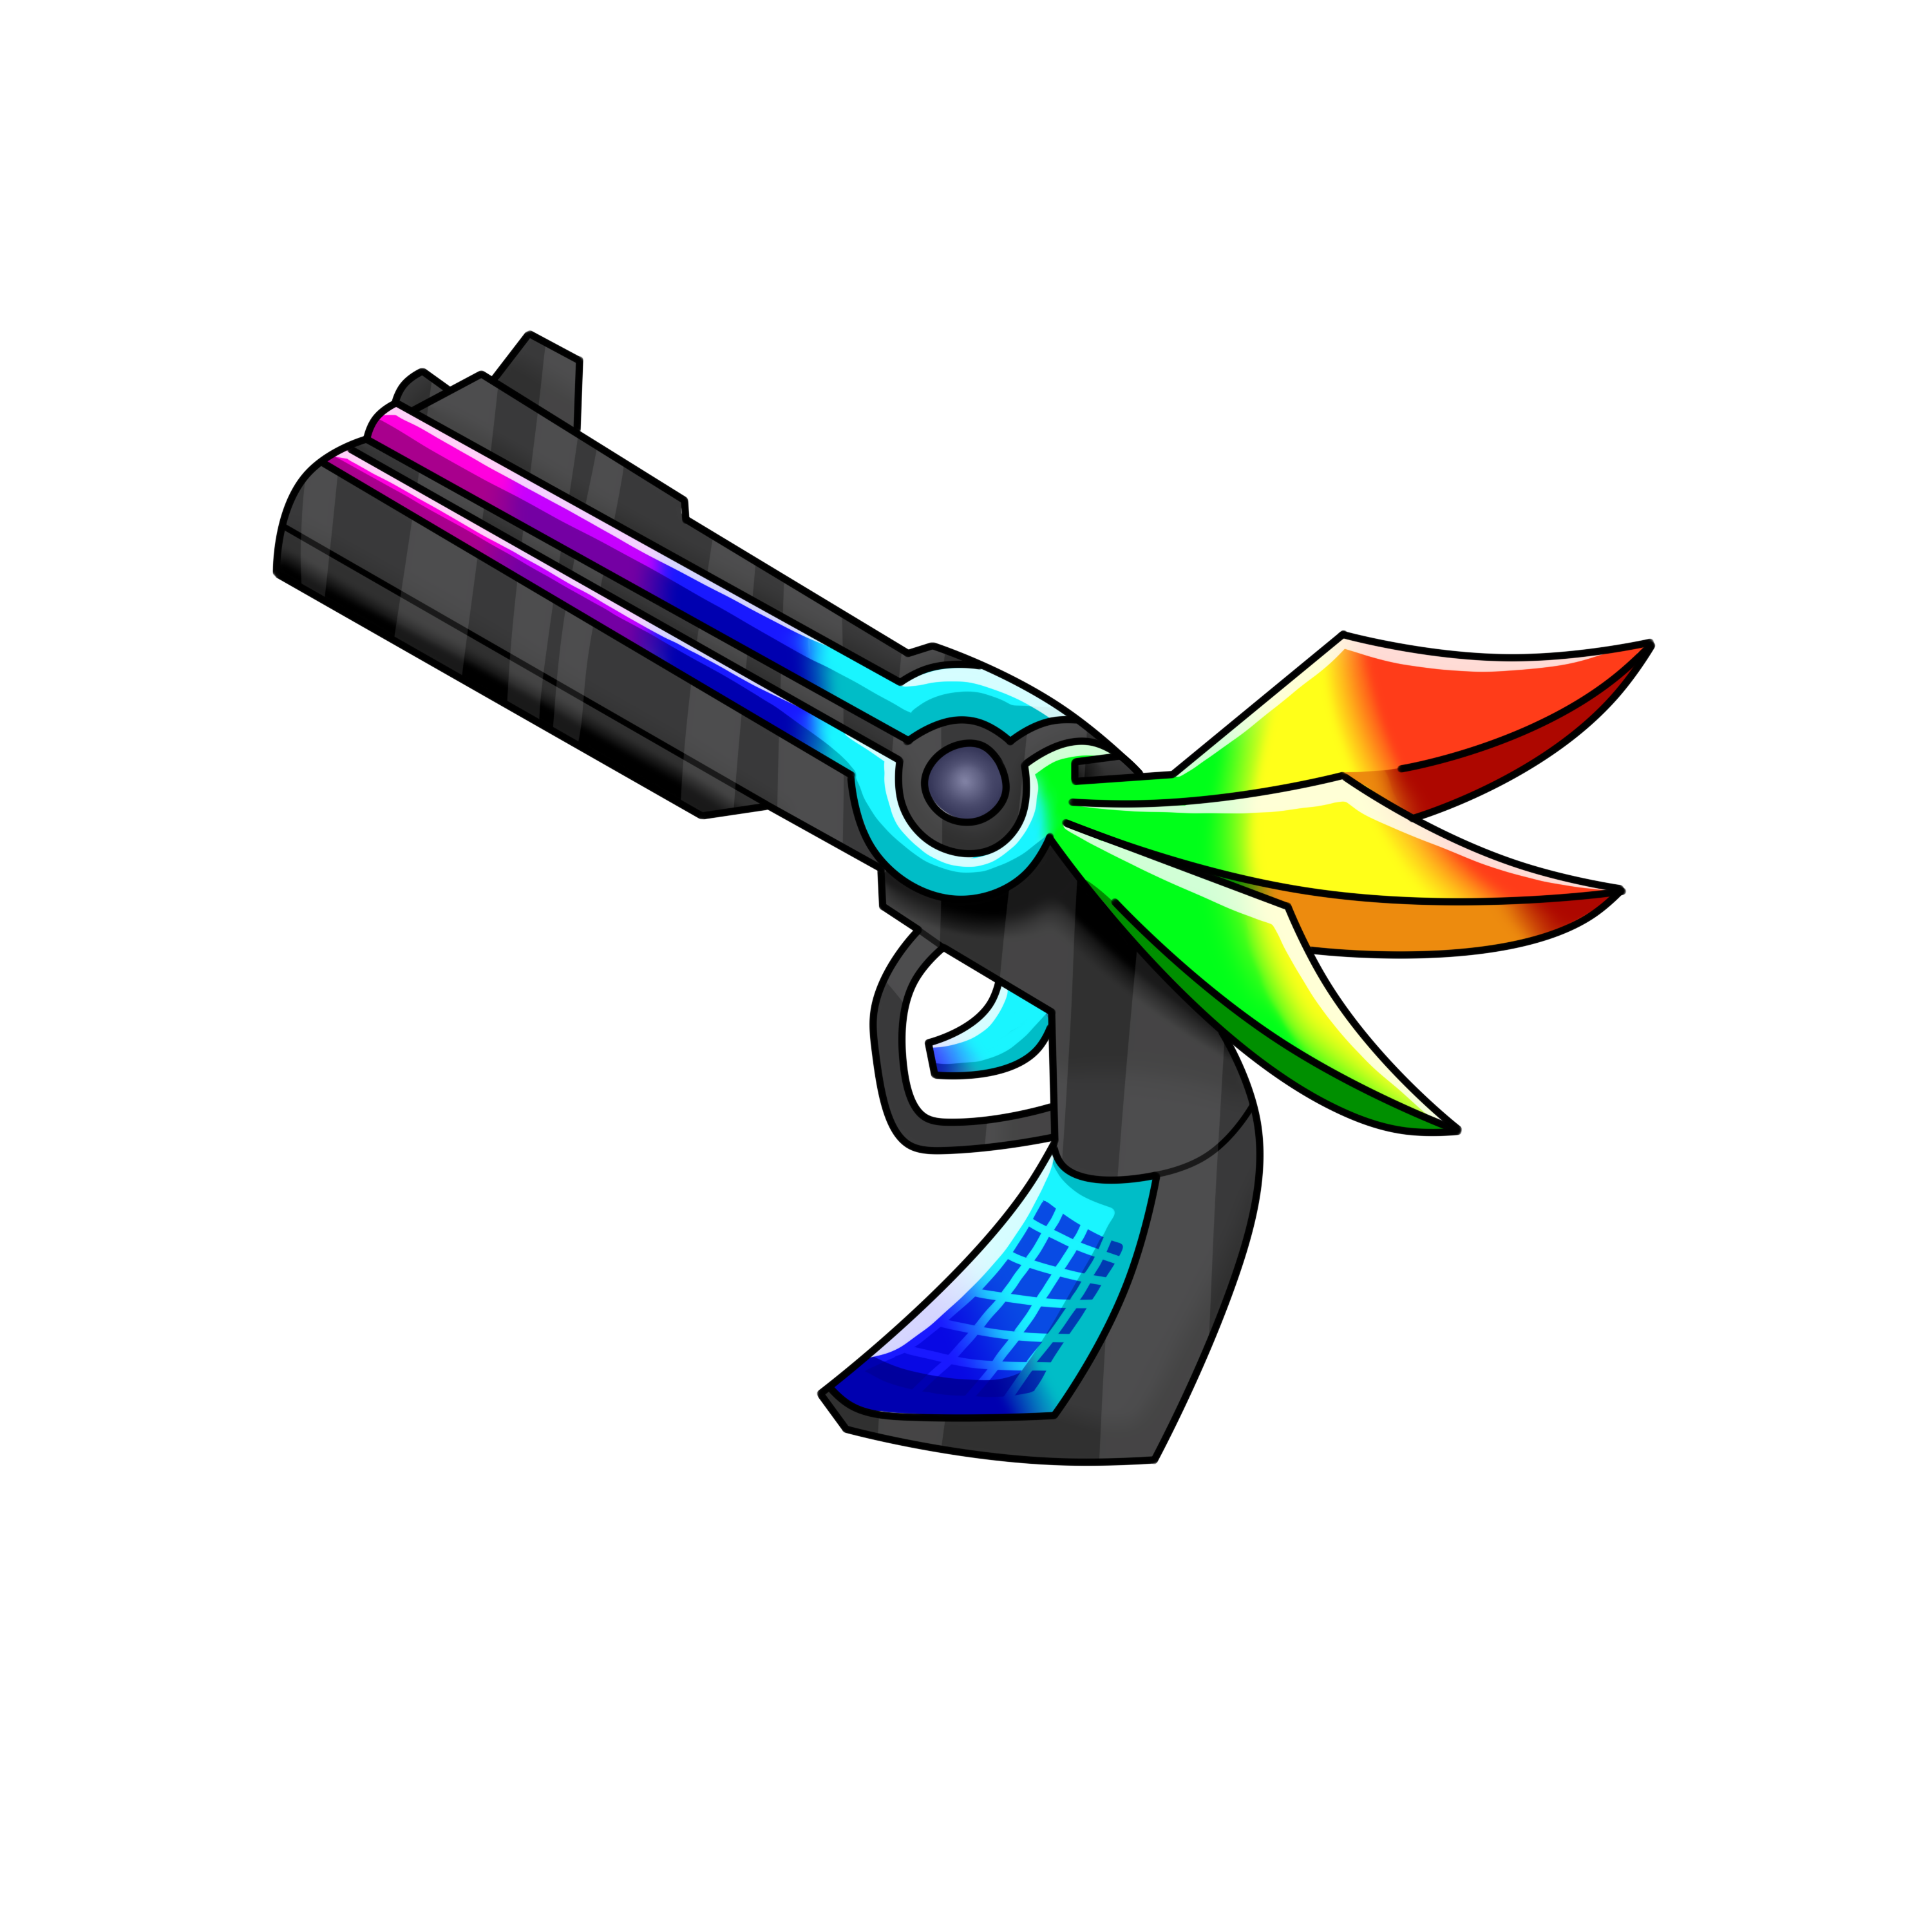 Chroma Darkbringer Gun